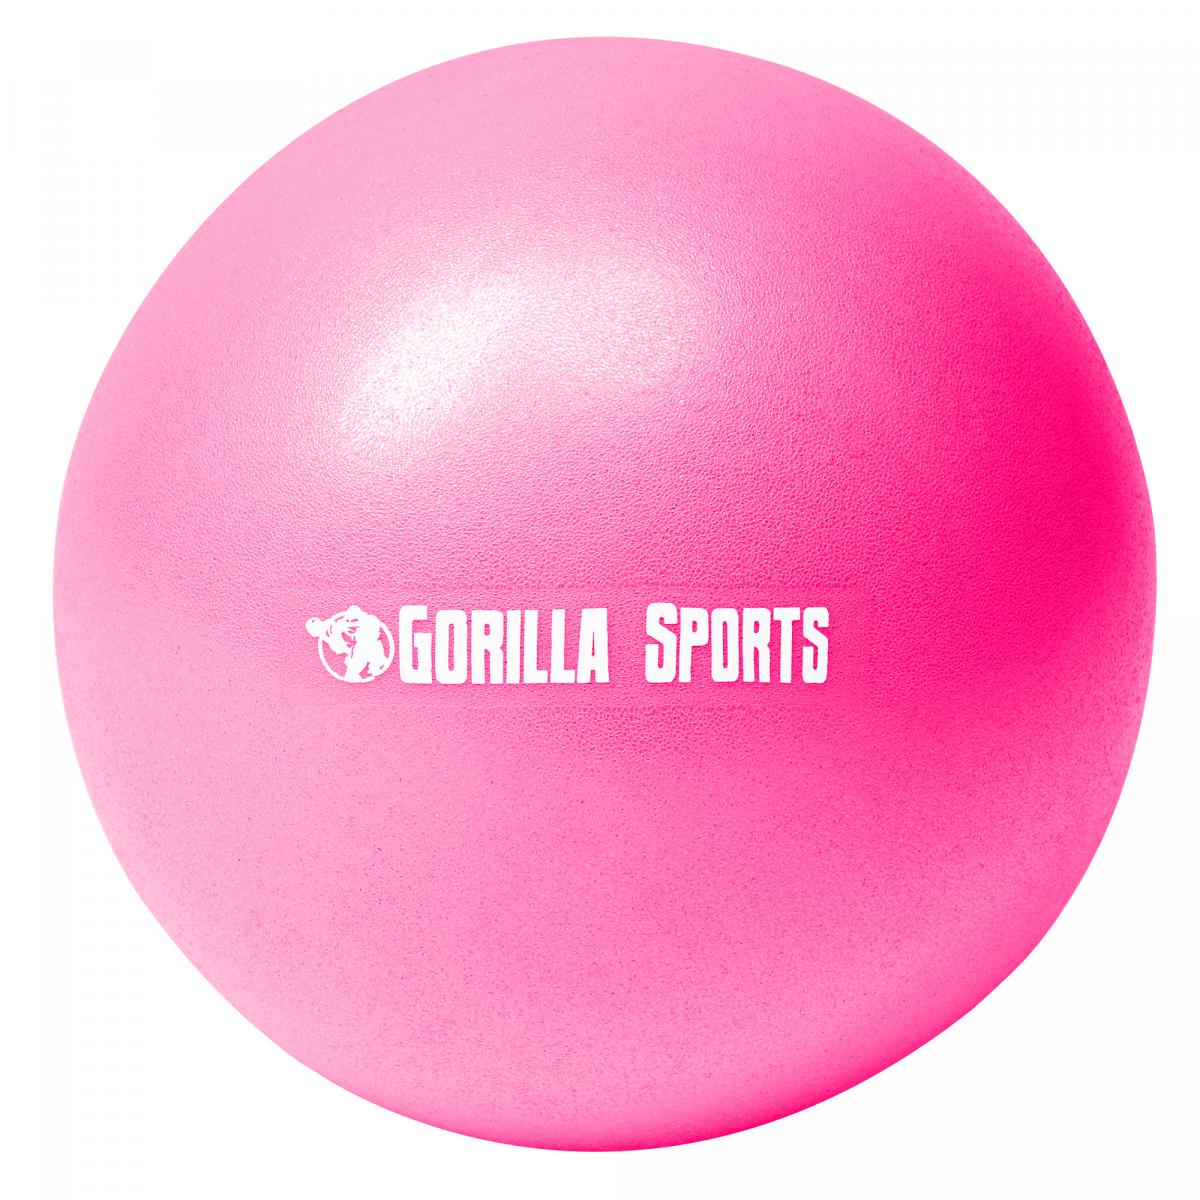 Mini-ballon d'exercice rose, ballon lÃ©ger de Pilates Soft Ball - DiamÃ¨tre : 18 cm